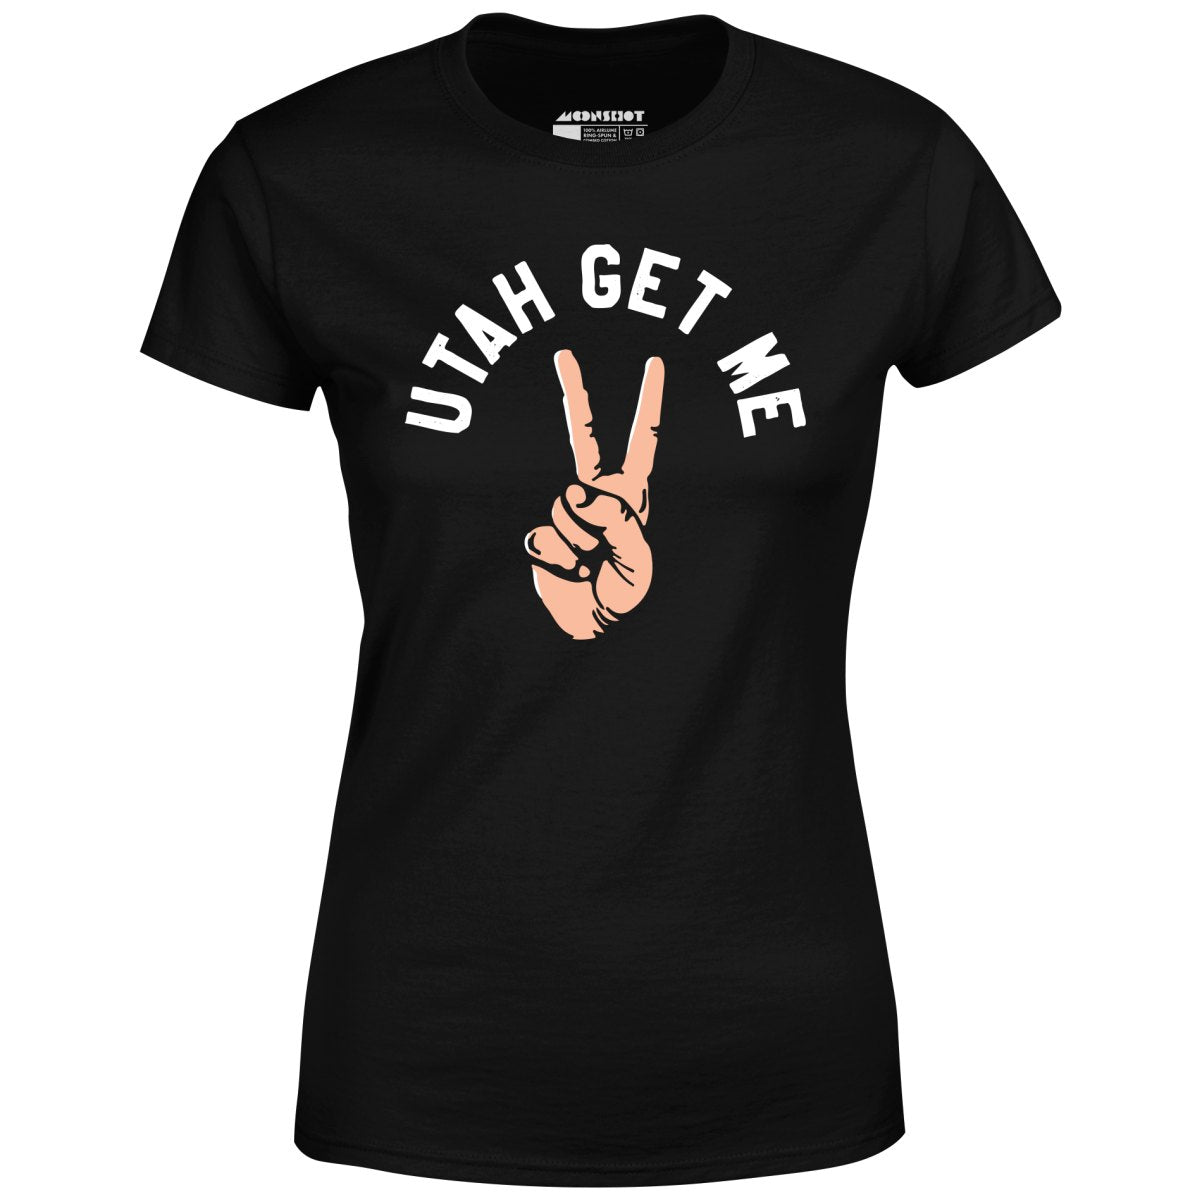 Utah Get Me Two - Women's T-Shirt